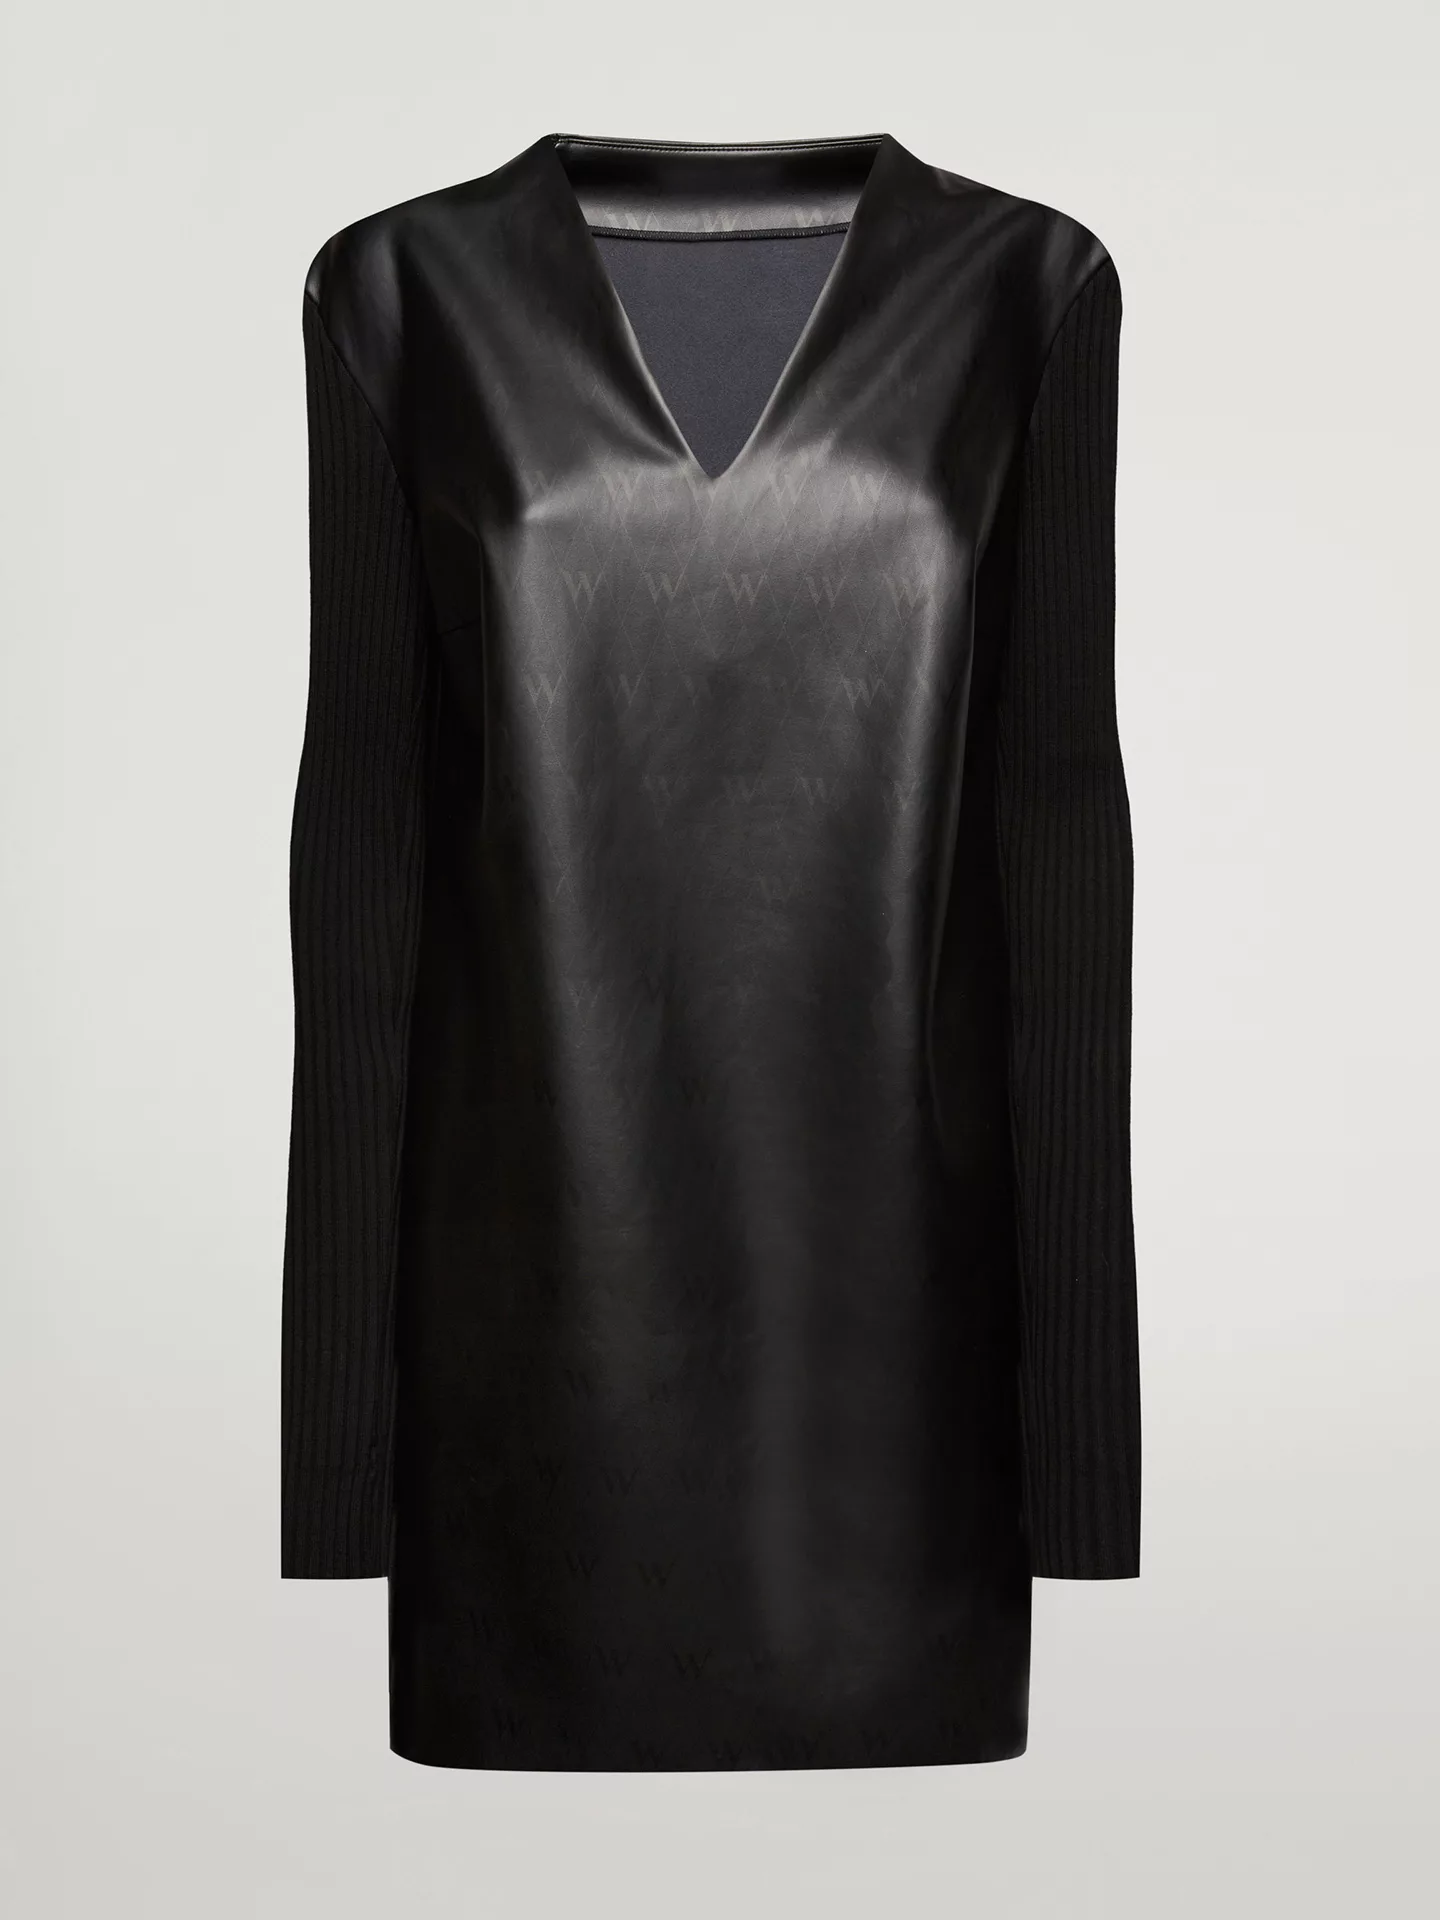 Wolford - Net Vegan Leather Dress, Frau, black, Größe: XS günstig online kaufen